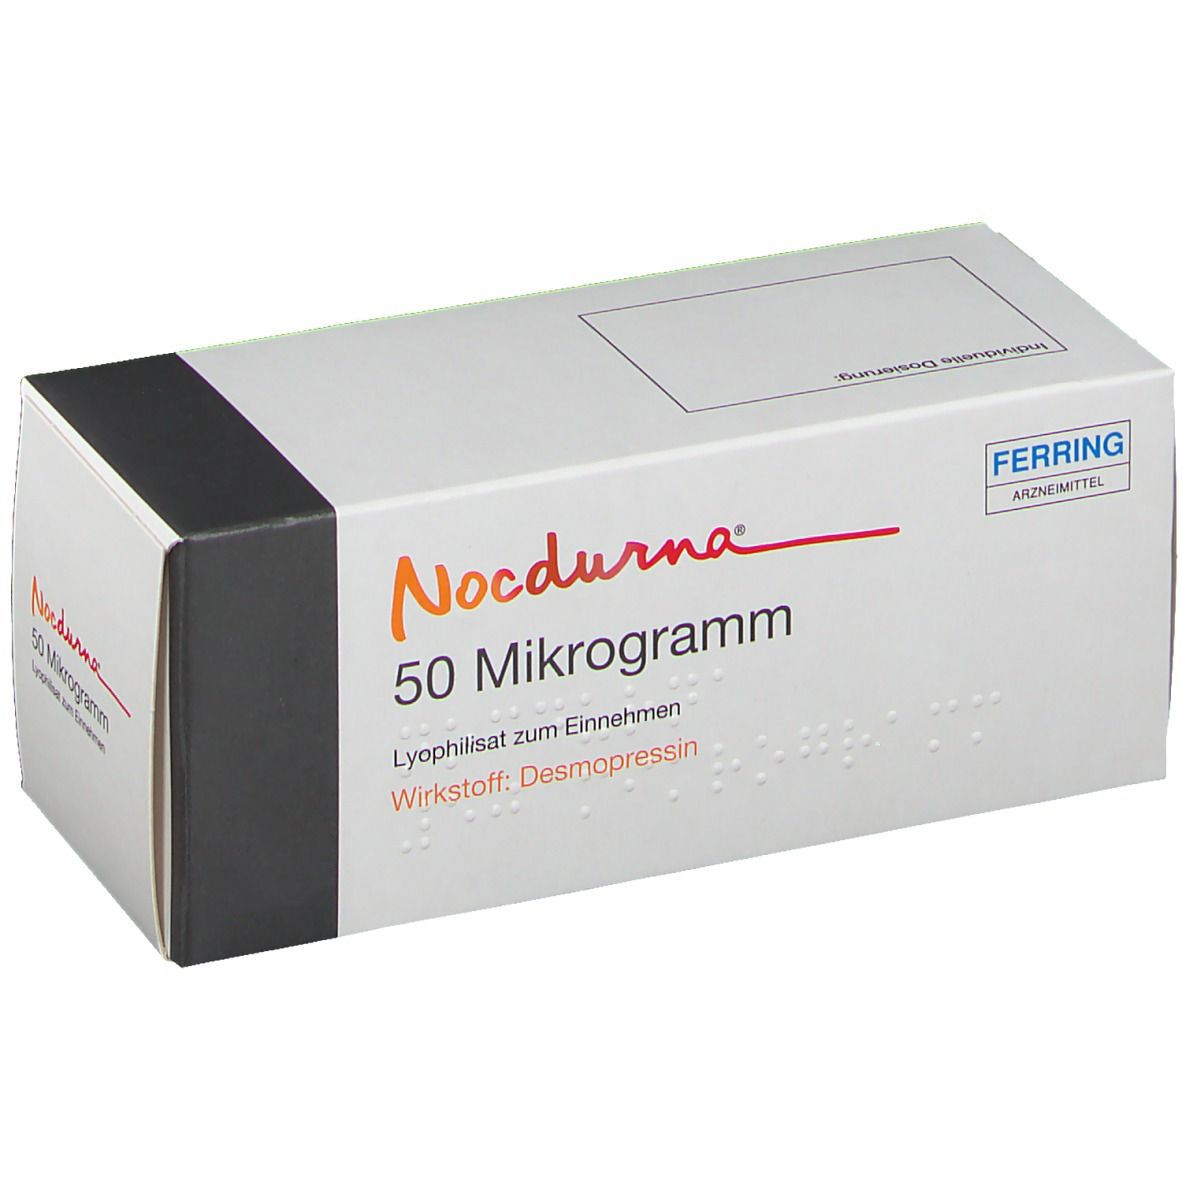 Nocdurna® 50 Mikrogramm